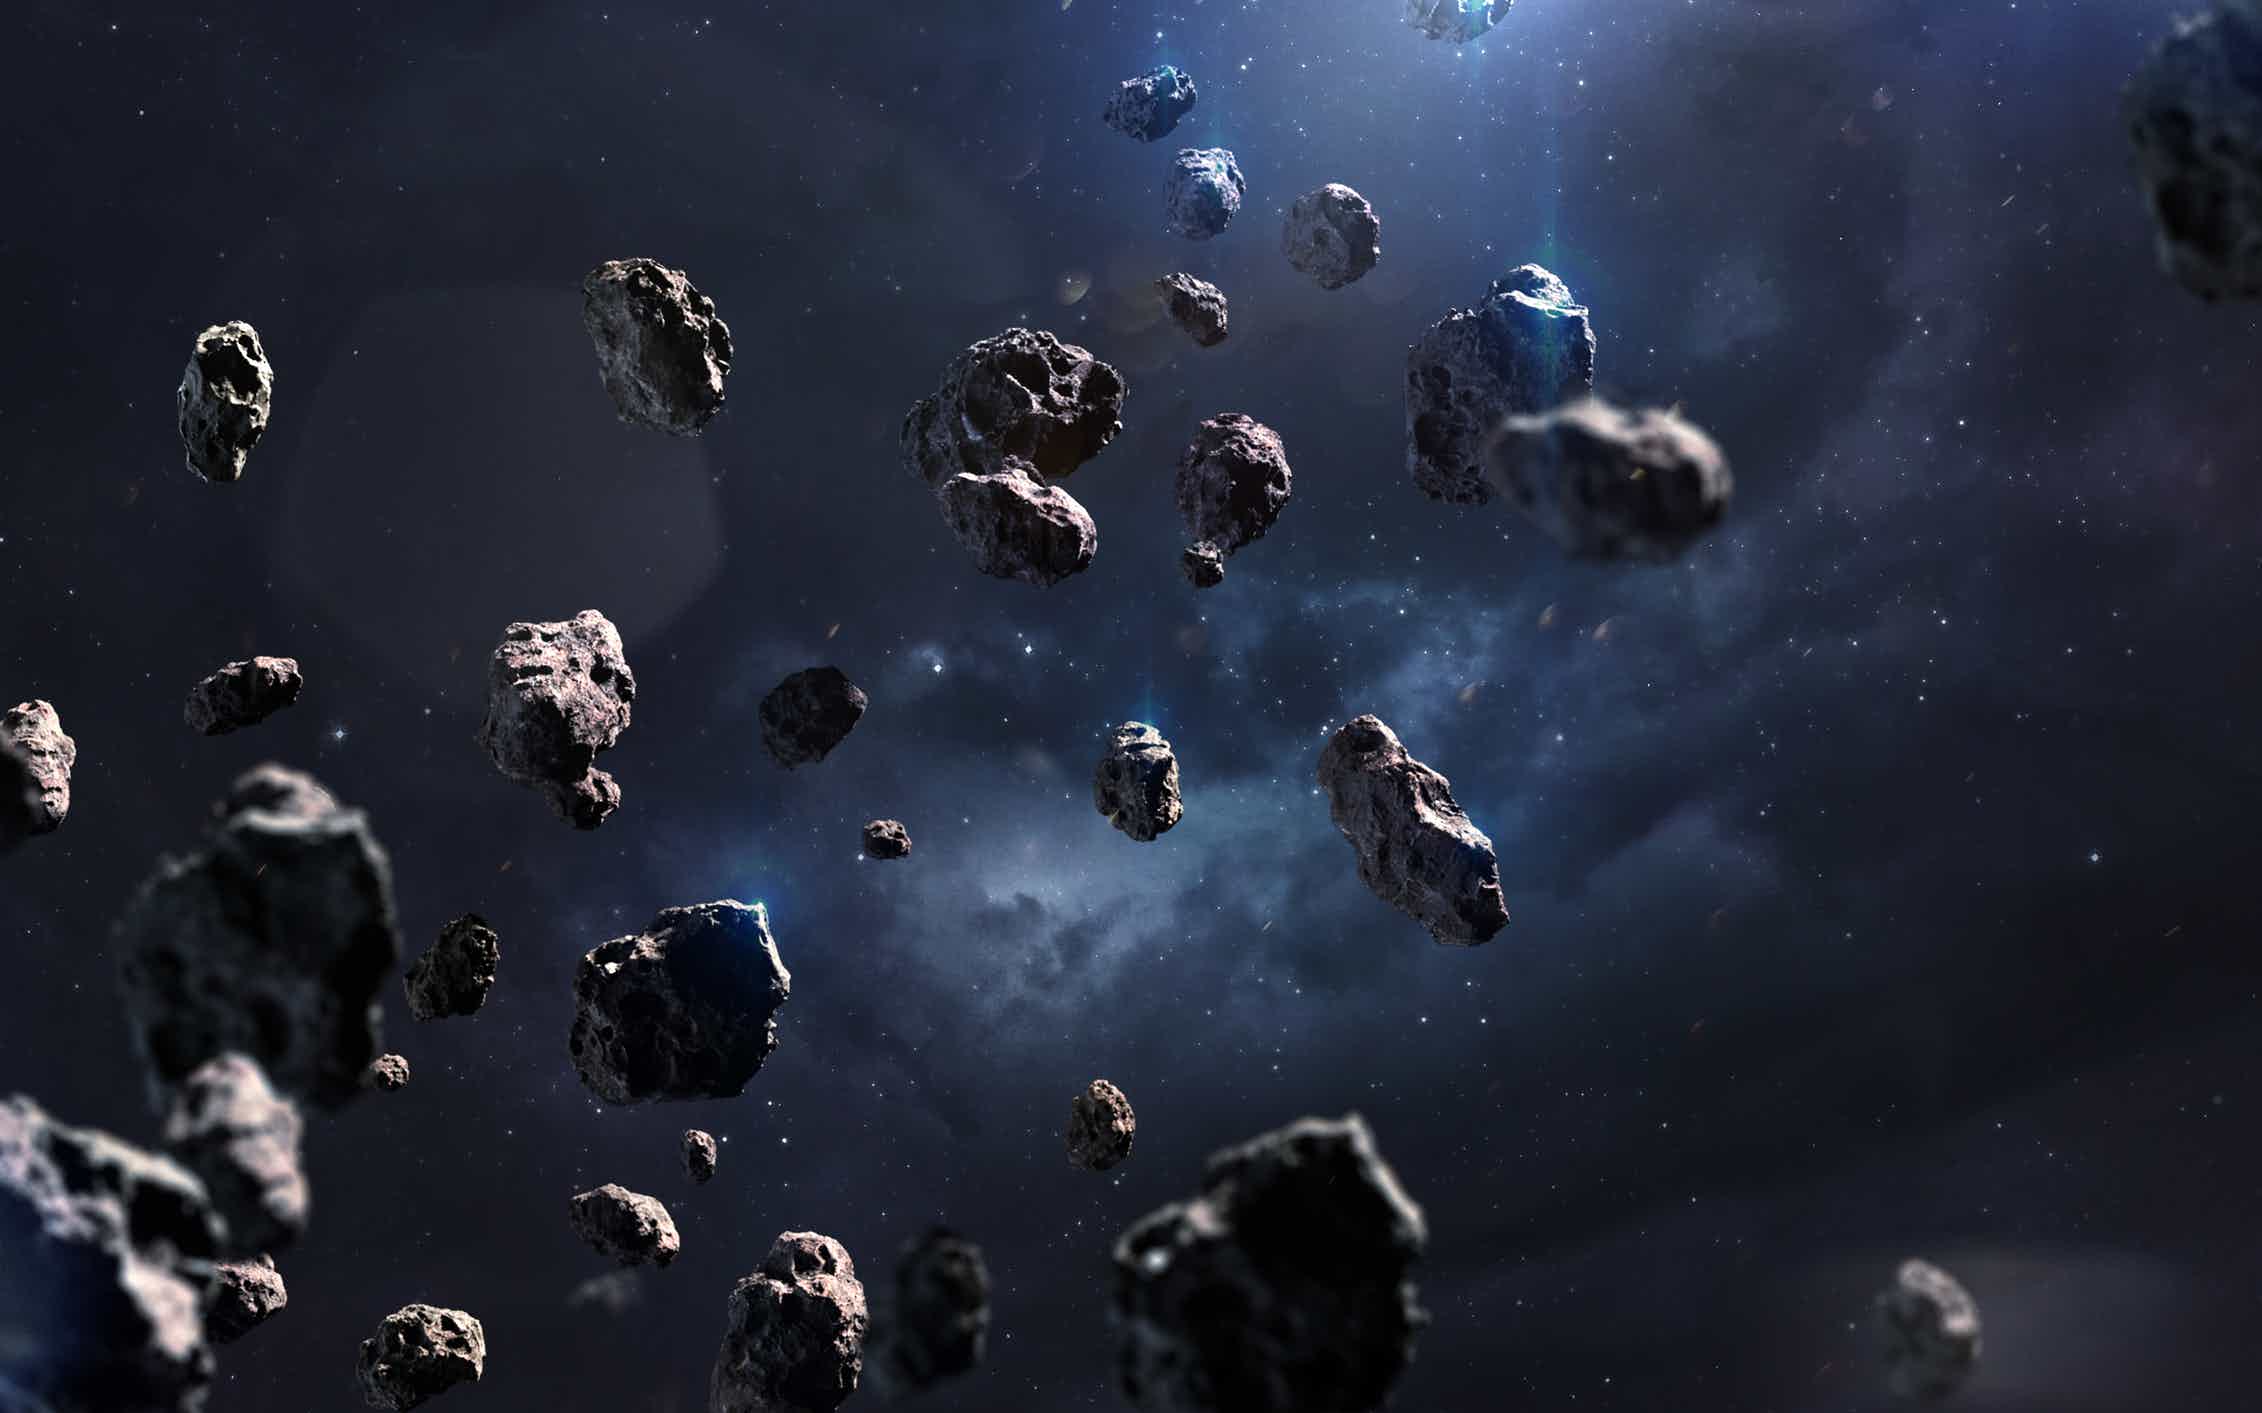 18 мая (суббота) в 16.00 "Астероиды и метеориты", открытое занятие по астрономии 10+